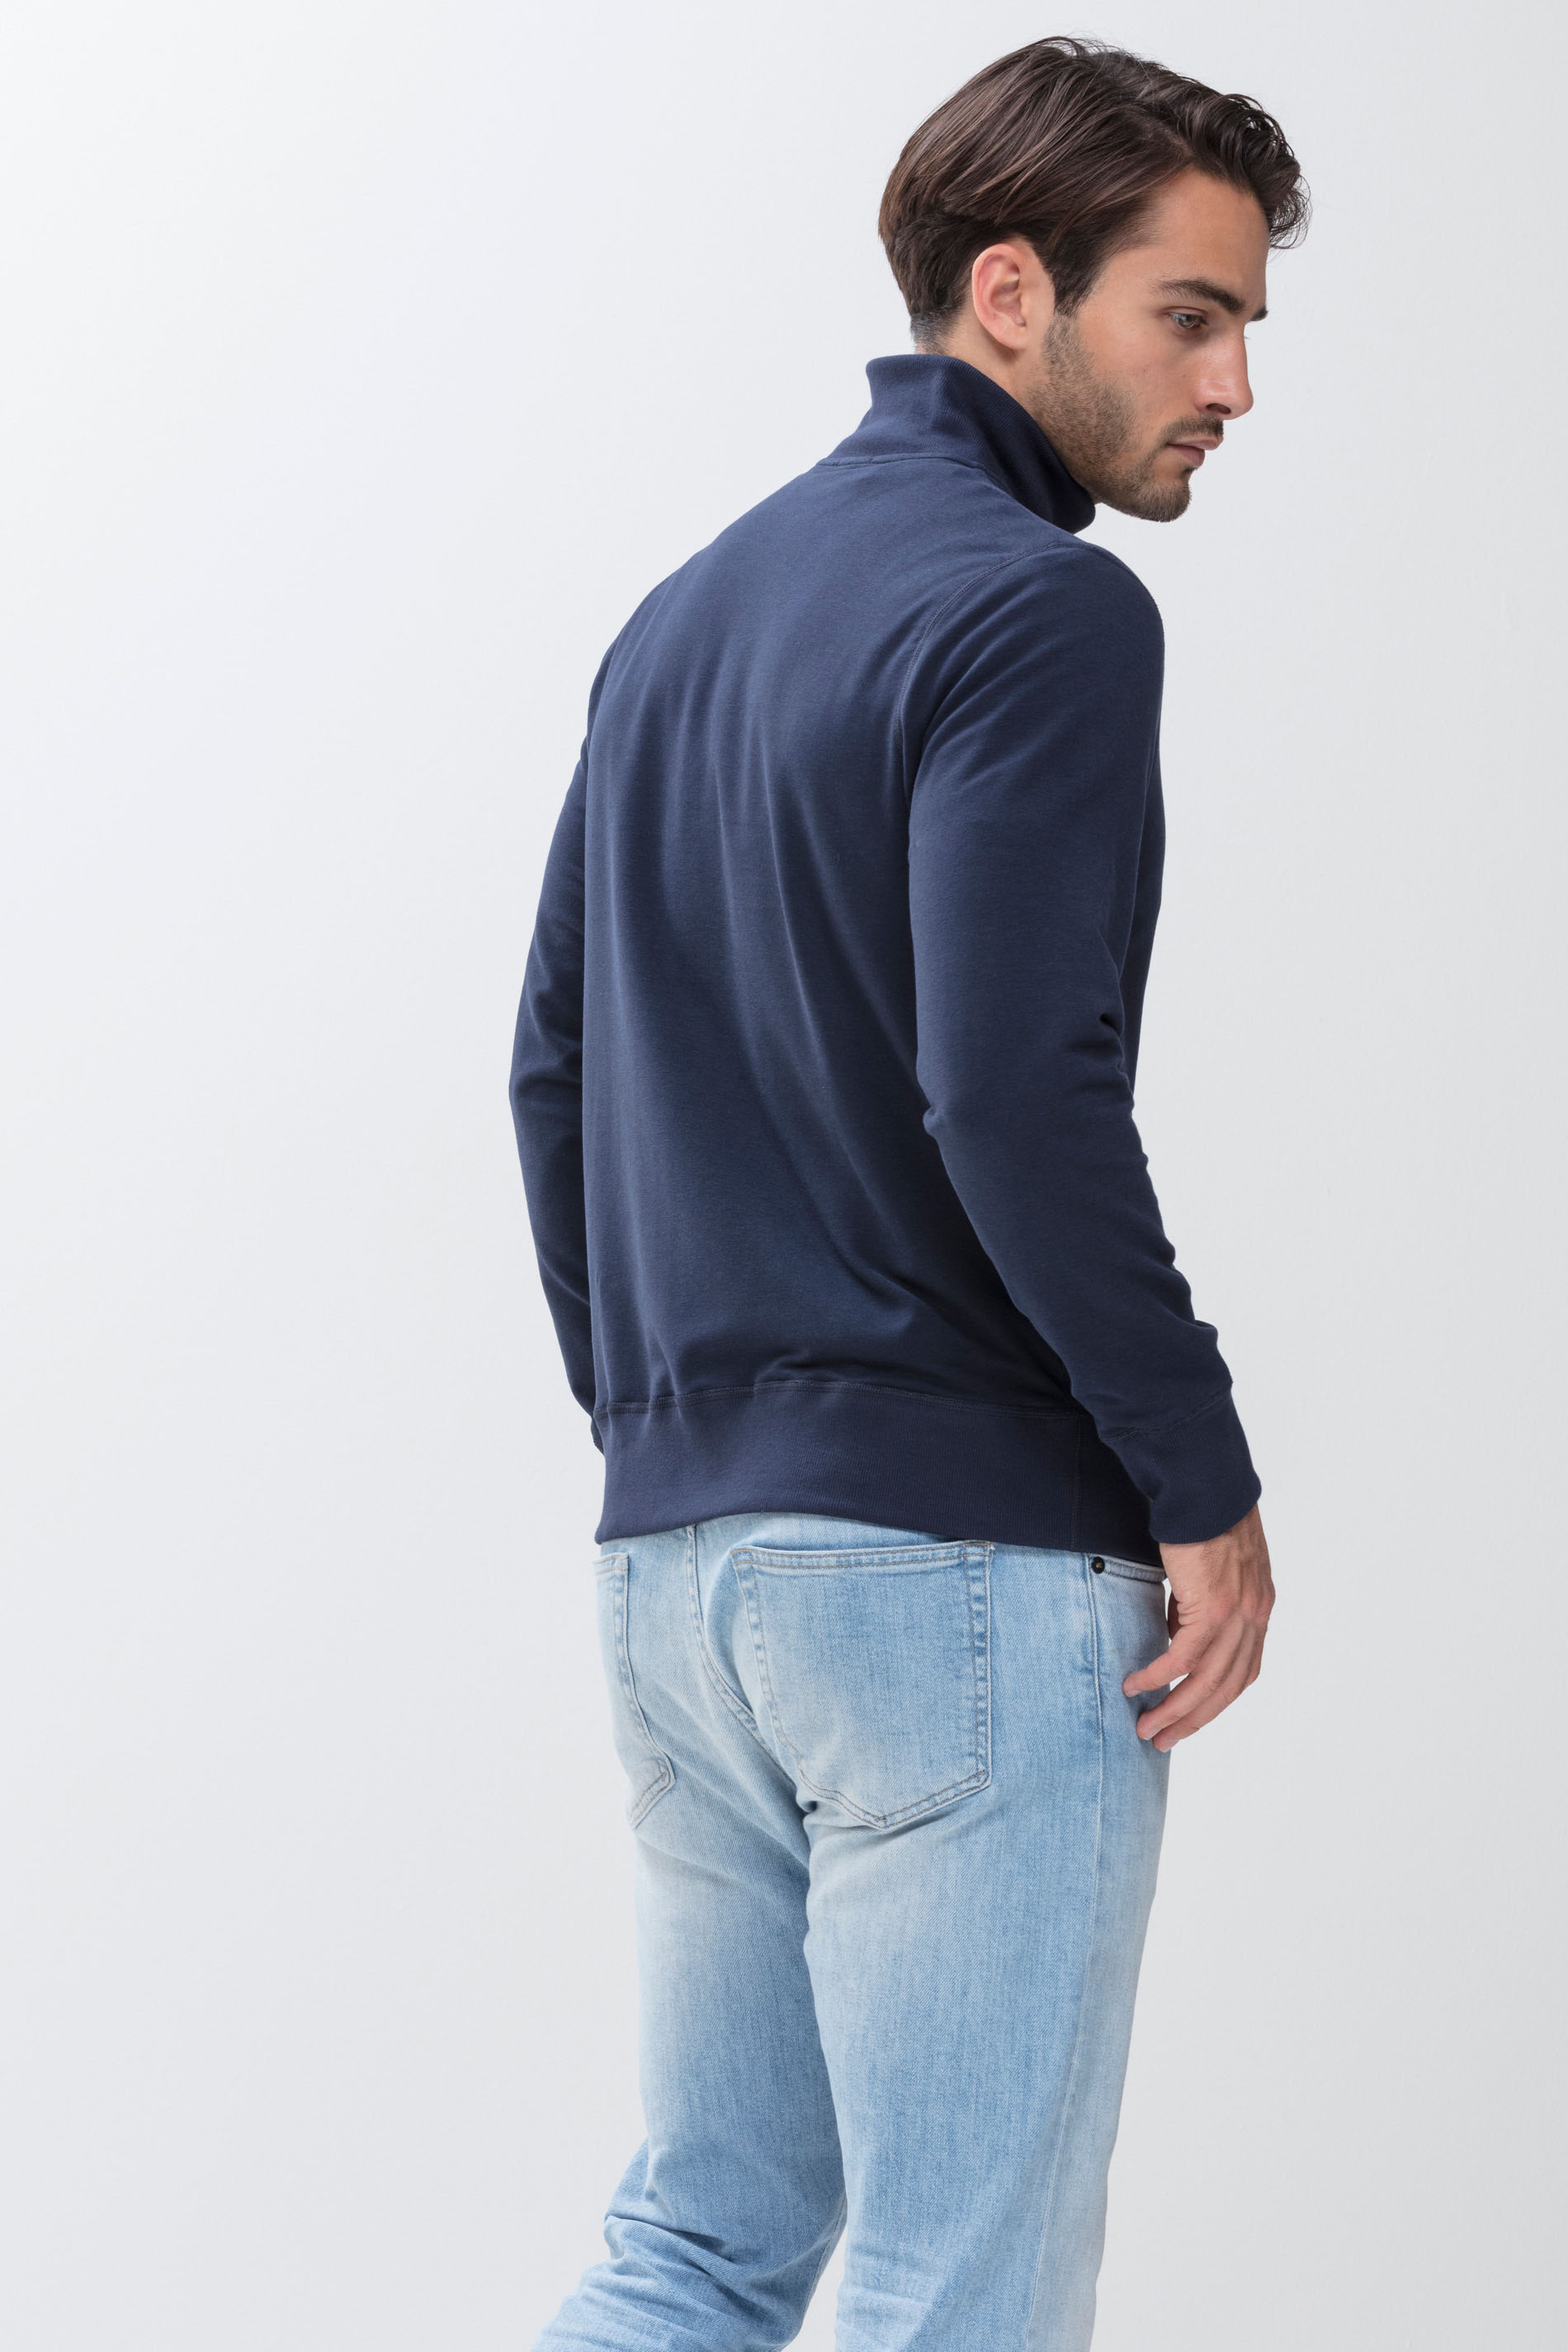 Men's sweat jacket with zip Yacht Blue Serie Enjoy Rear View | mey®